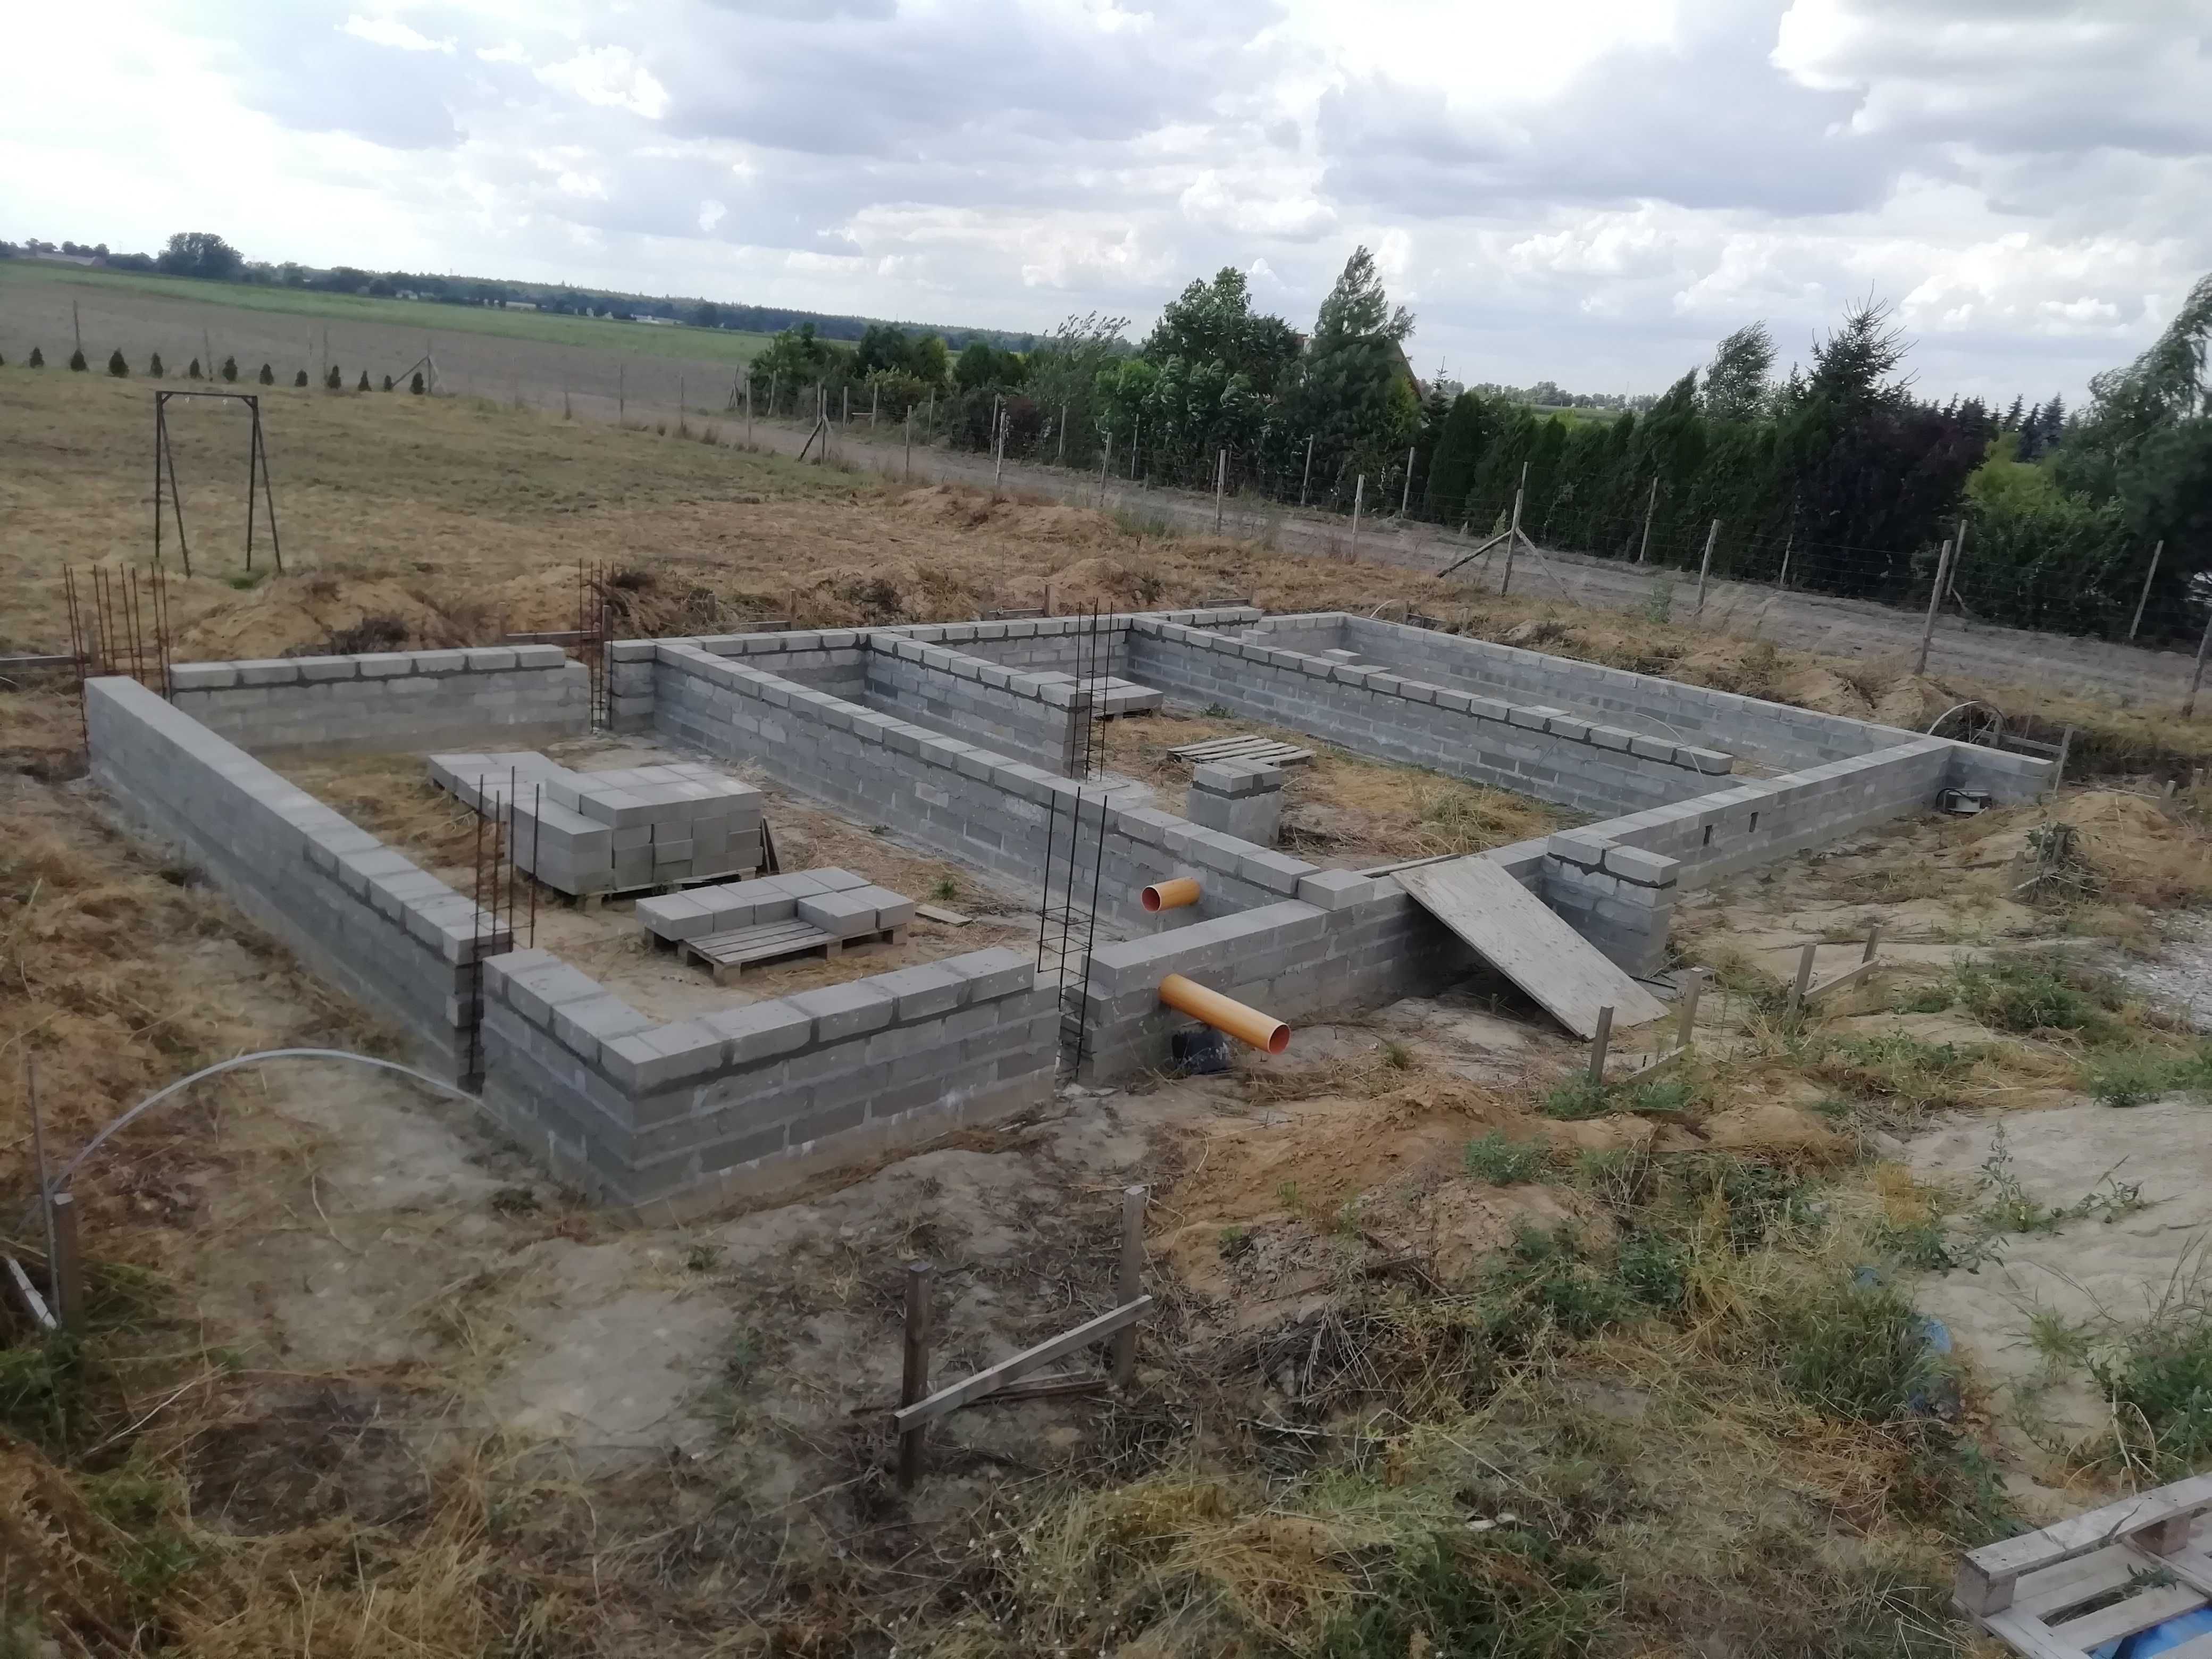 Działka budowlana Przecław / pozwolenie na budowę, rozpoczęta budowa